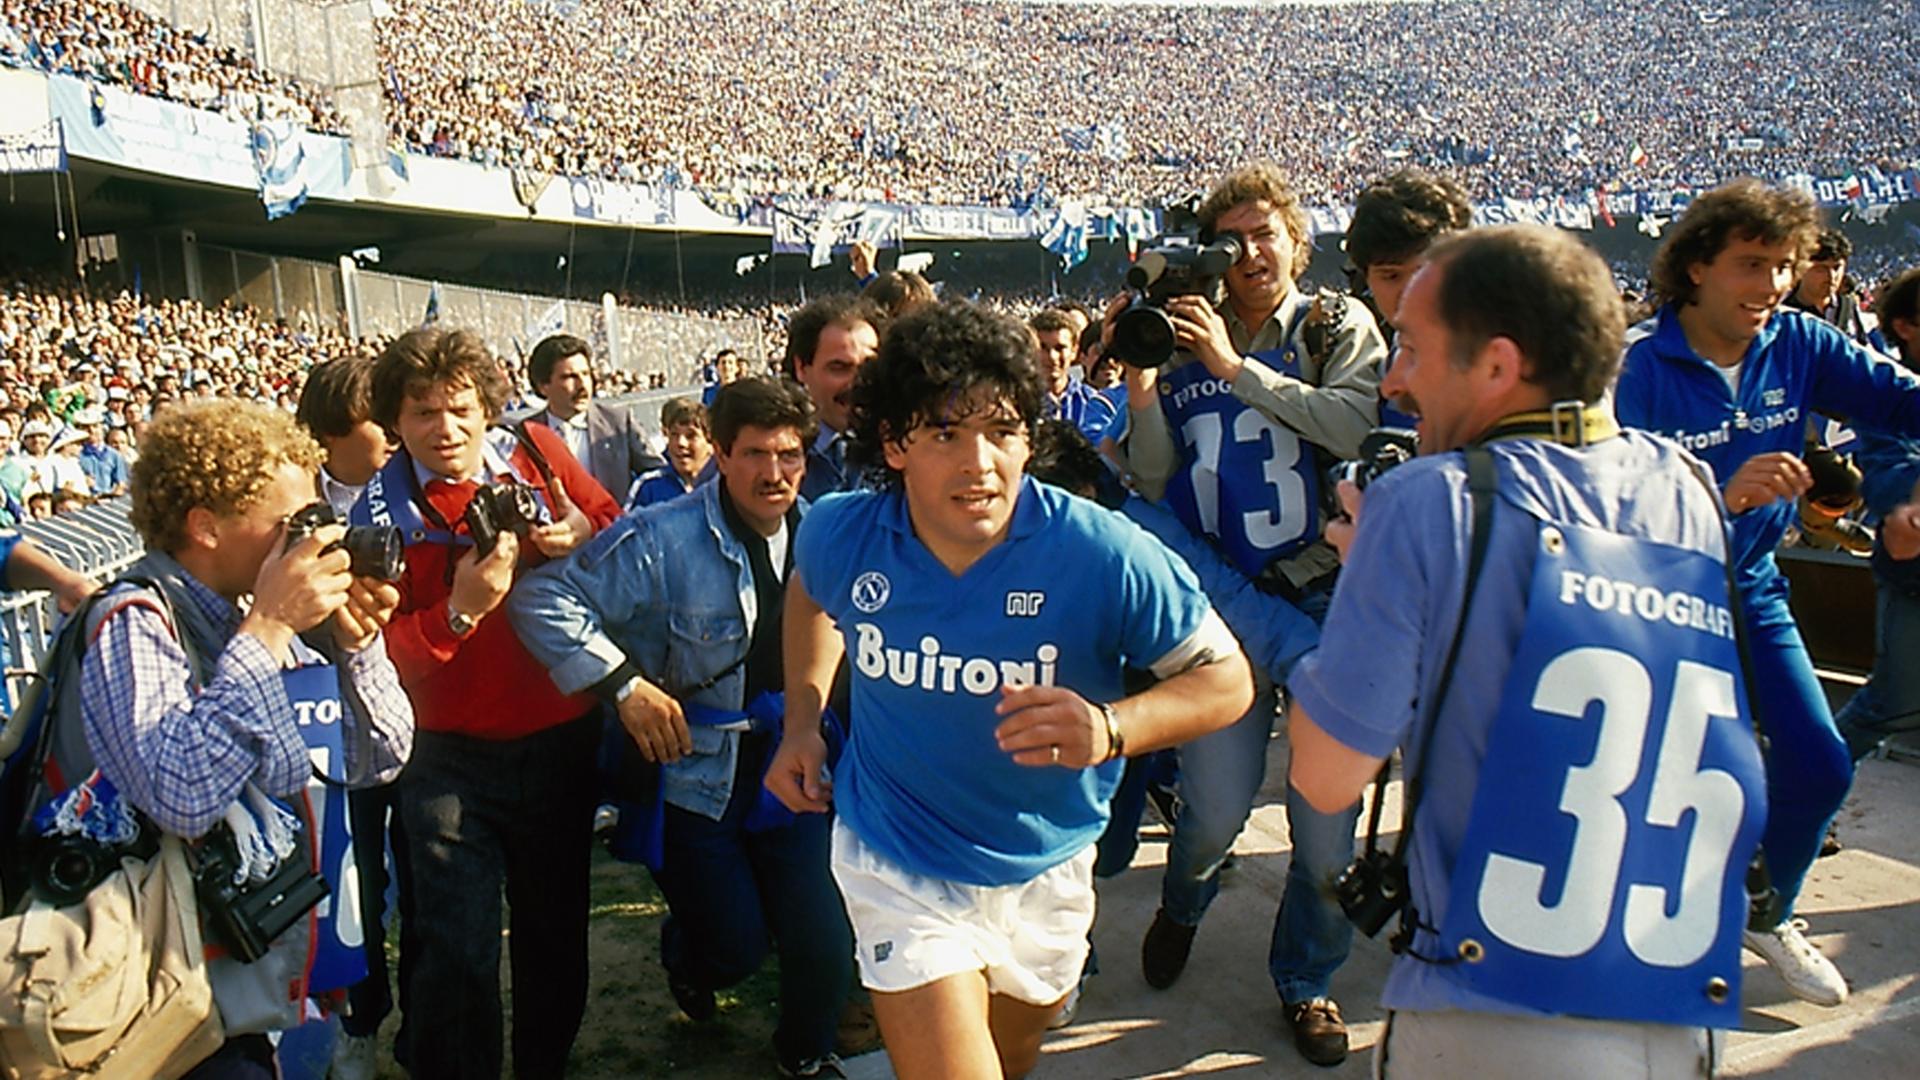 Diego Maradona läuft durch das Stadium, gefolgt von Journalisten.